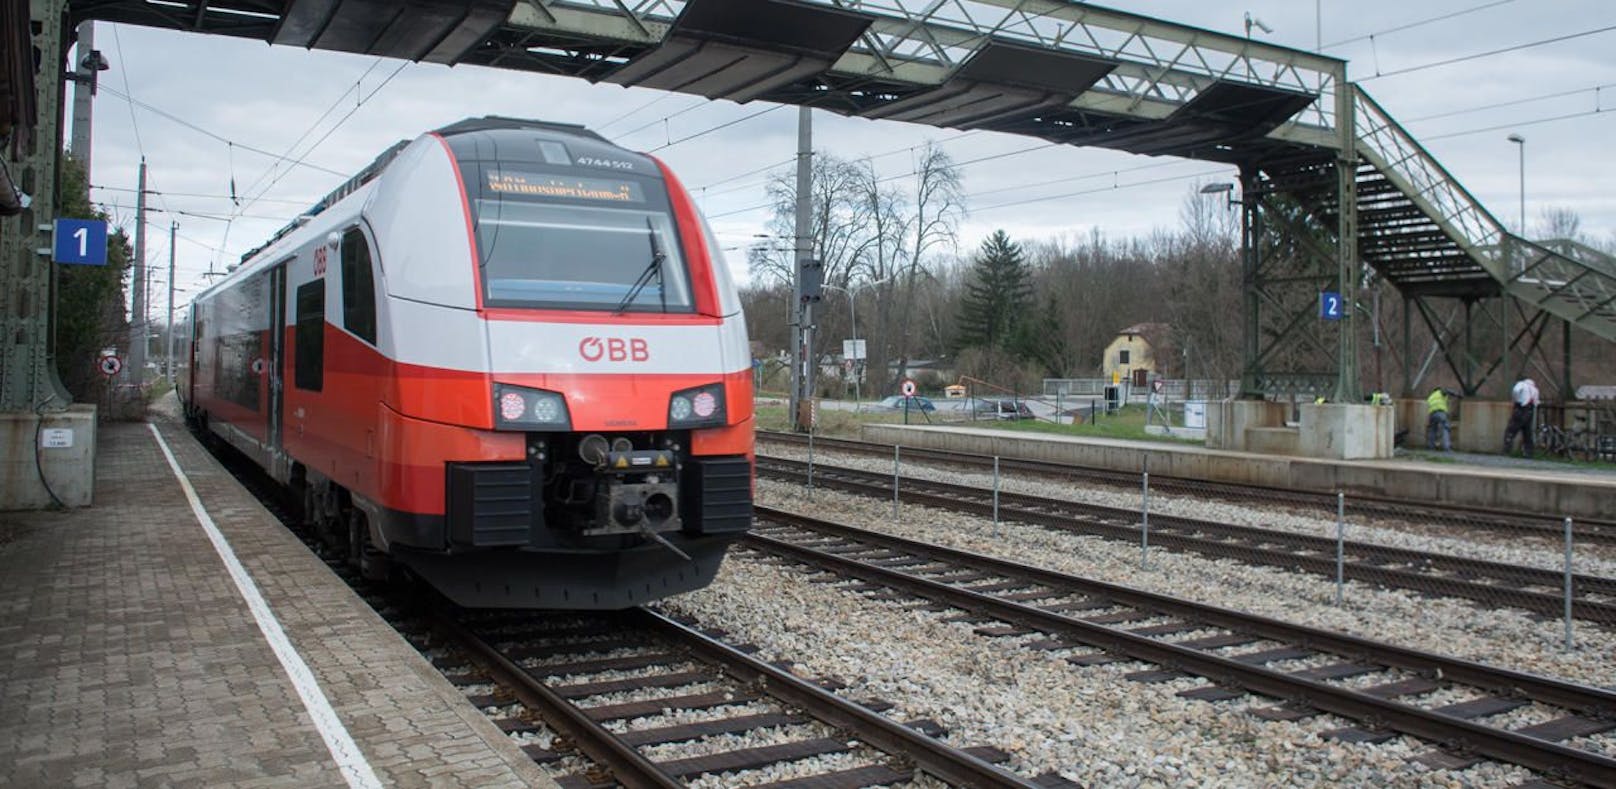 Sanierung beginnt in den nächsten Tagen: Zugreisende erreichen den Bahnsteig 2 in Kritzendorf derzeit über ein Provisorium.